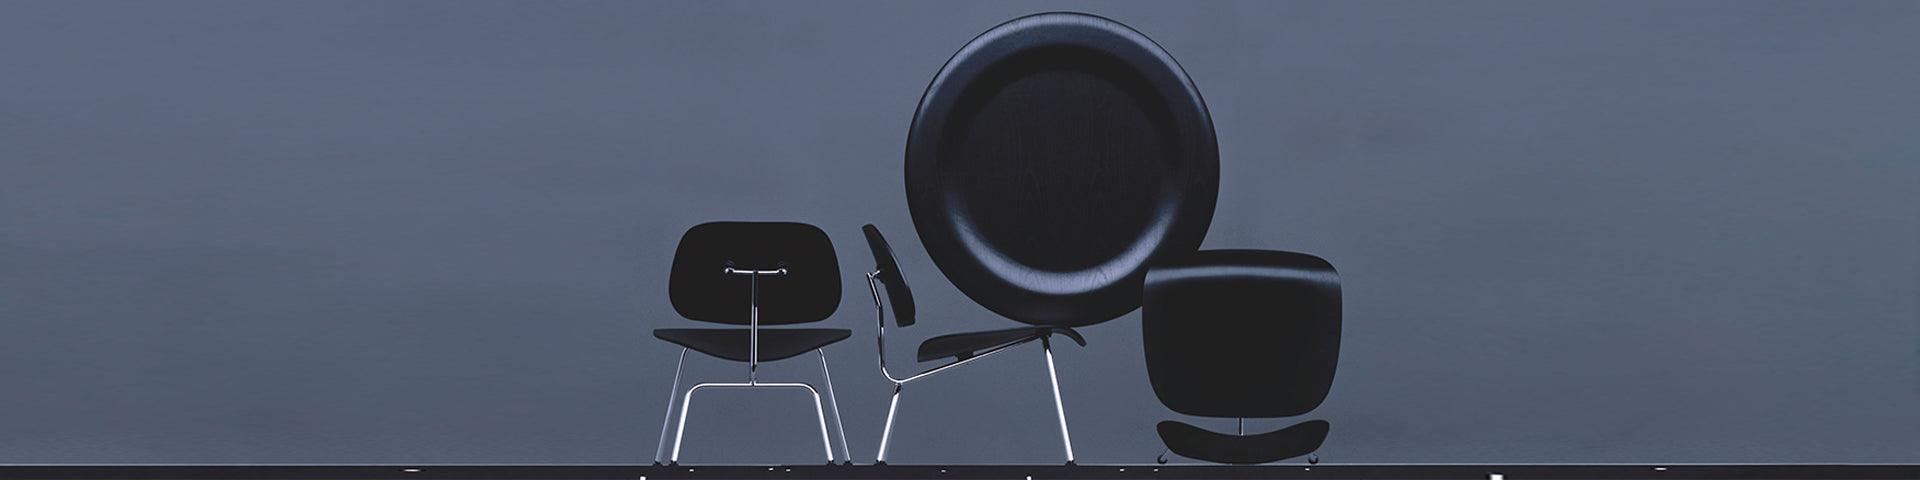 Eames LCM chair, 1945